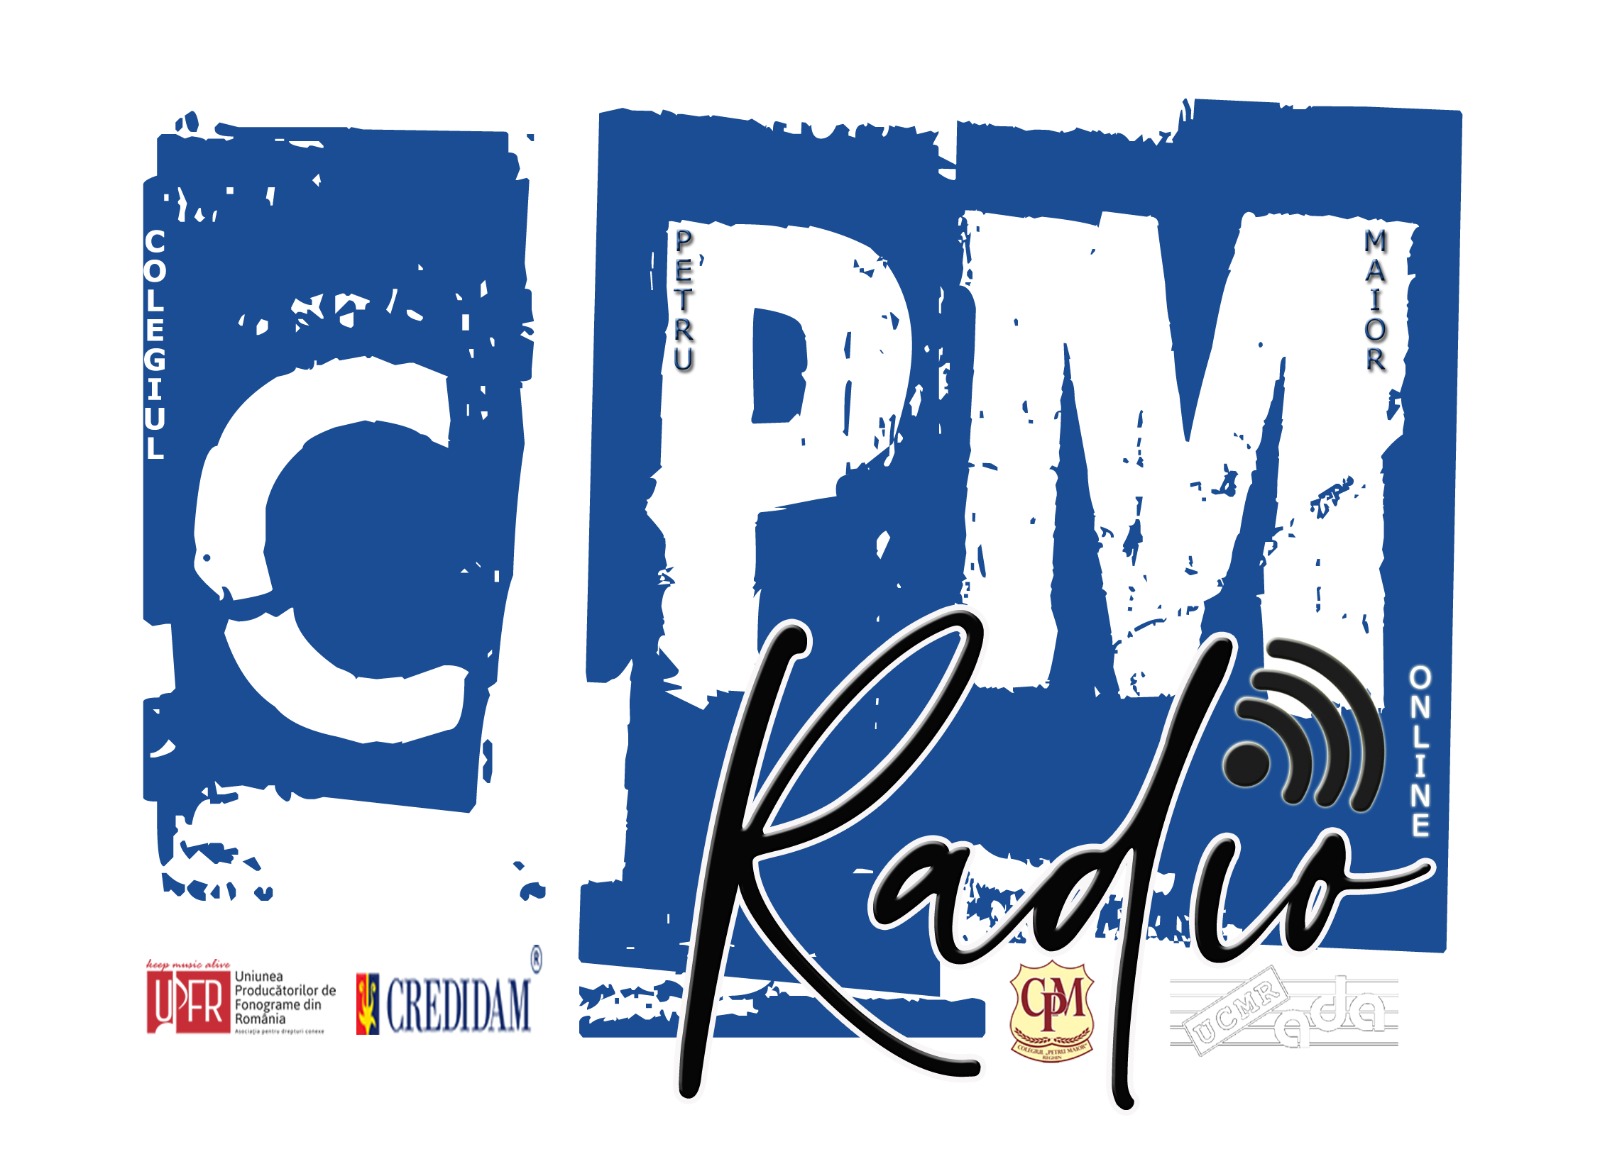 Radio CPM